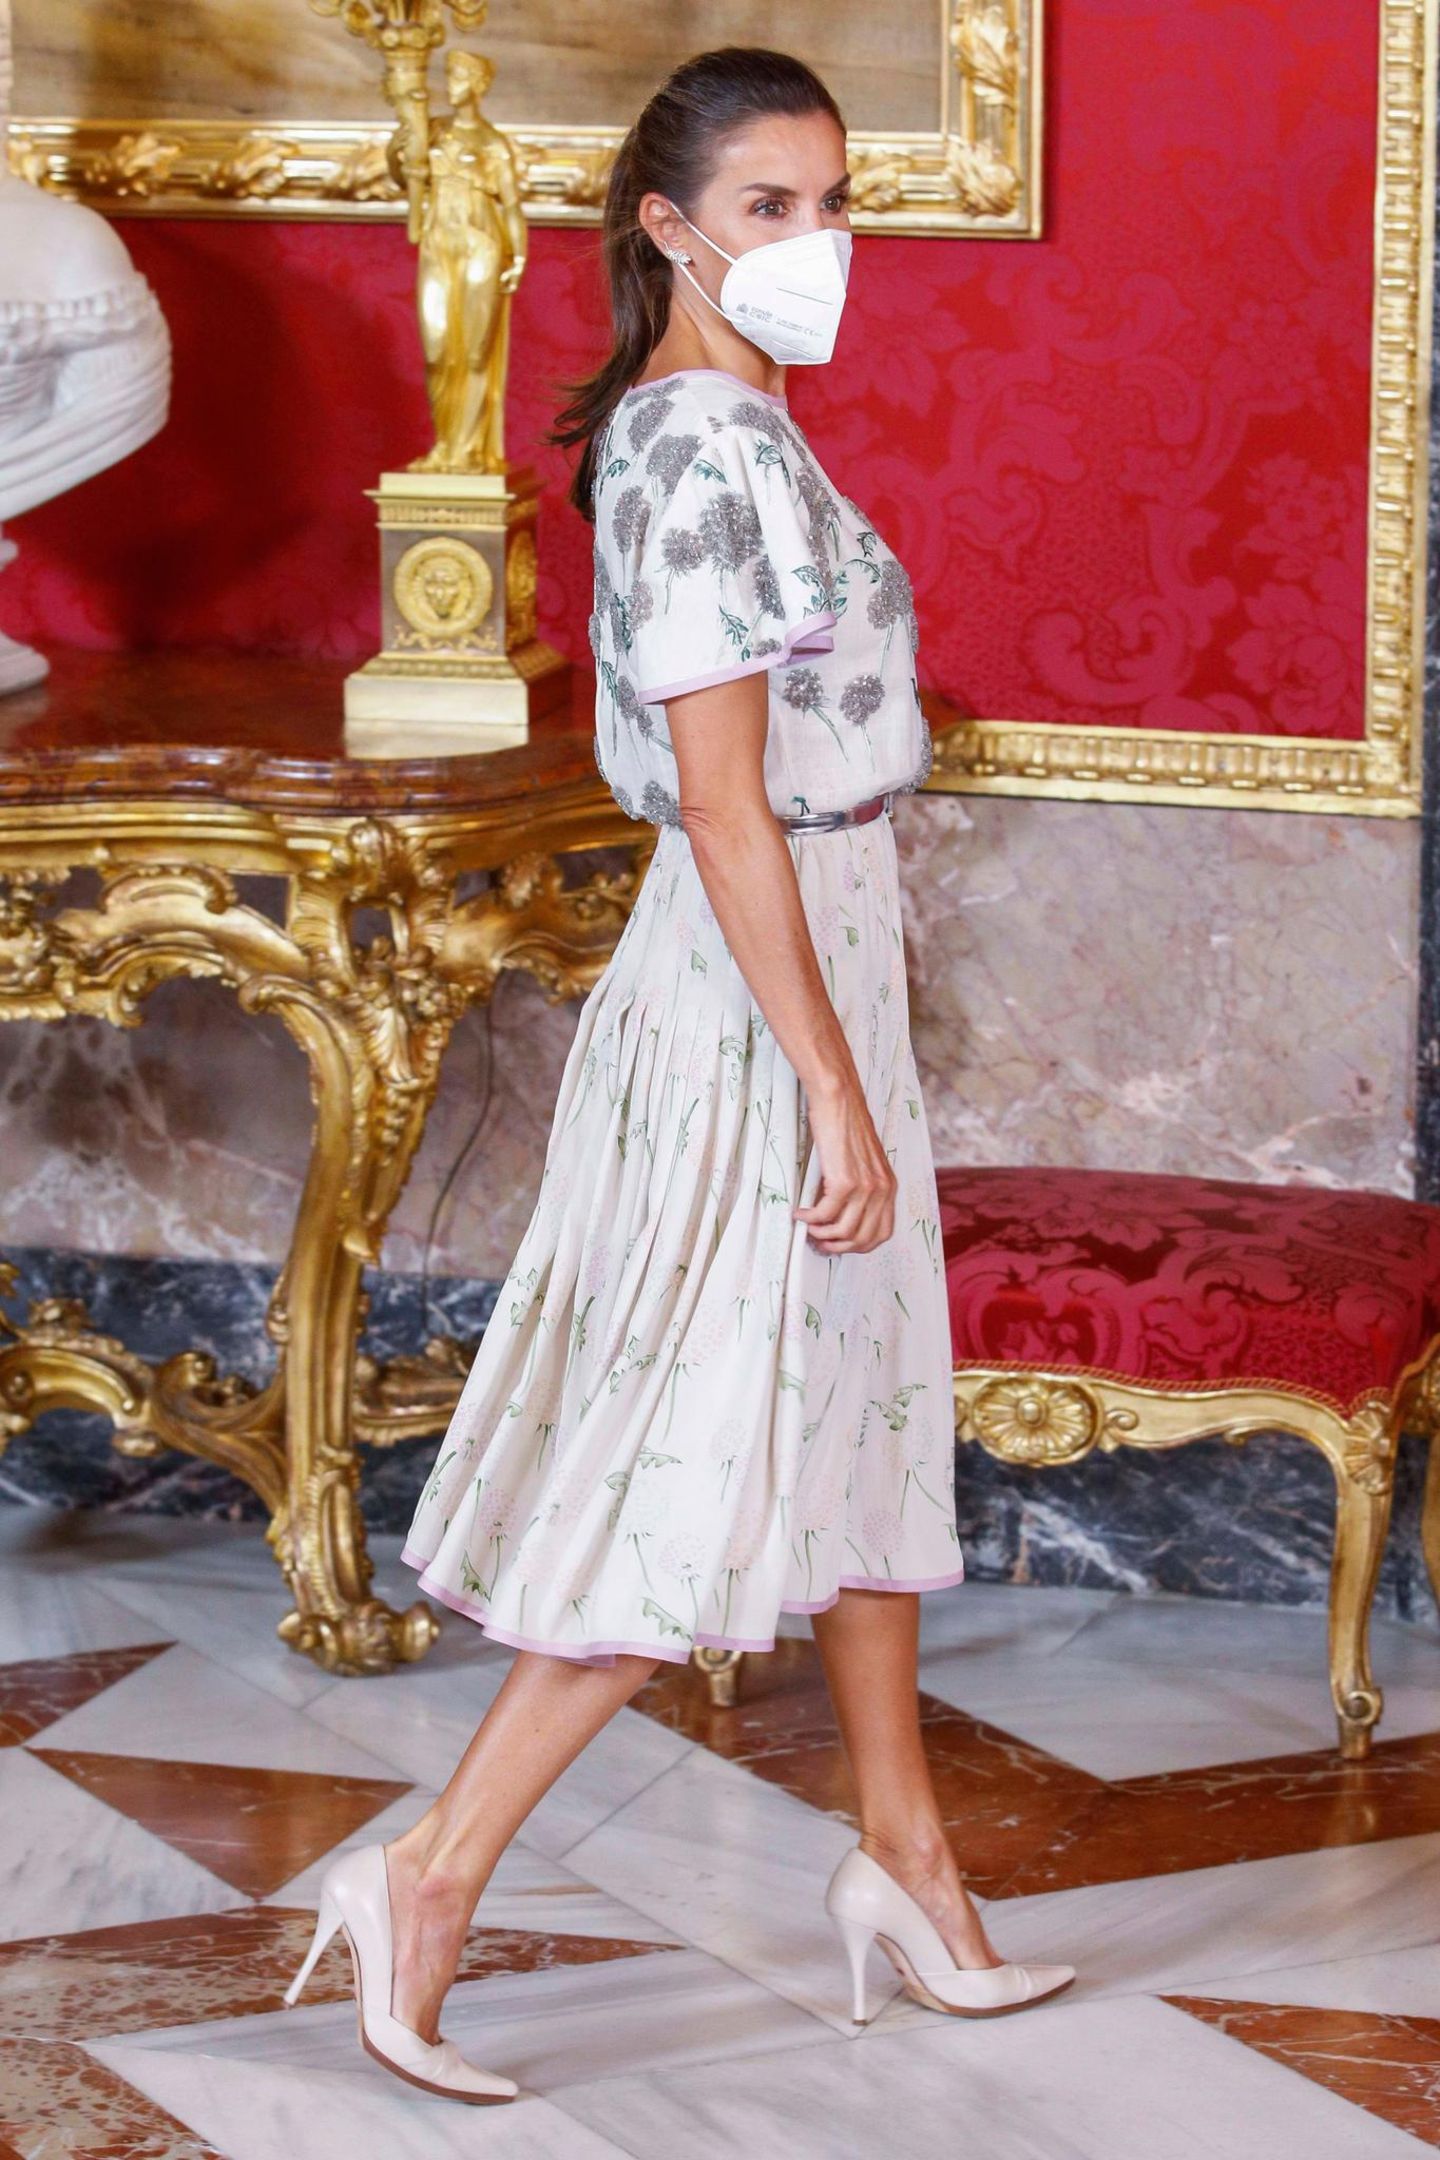 Beim Essen zu Ehren des chilenischen Präsidenten trägt Königin Letizia ein Kleid, das wir zuvor noch nie an ihr gesehen haben, dafür an ihrer Schwiegermutter Königin Sofía. 40 Jahre ist das jetzt her, mit ein paar Styling-Tricks ist das Vintage-Kleid aber wieder top modern. 